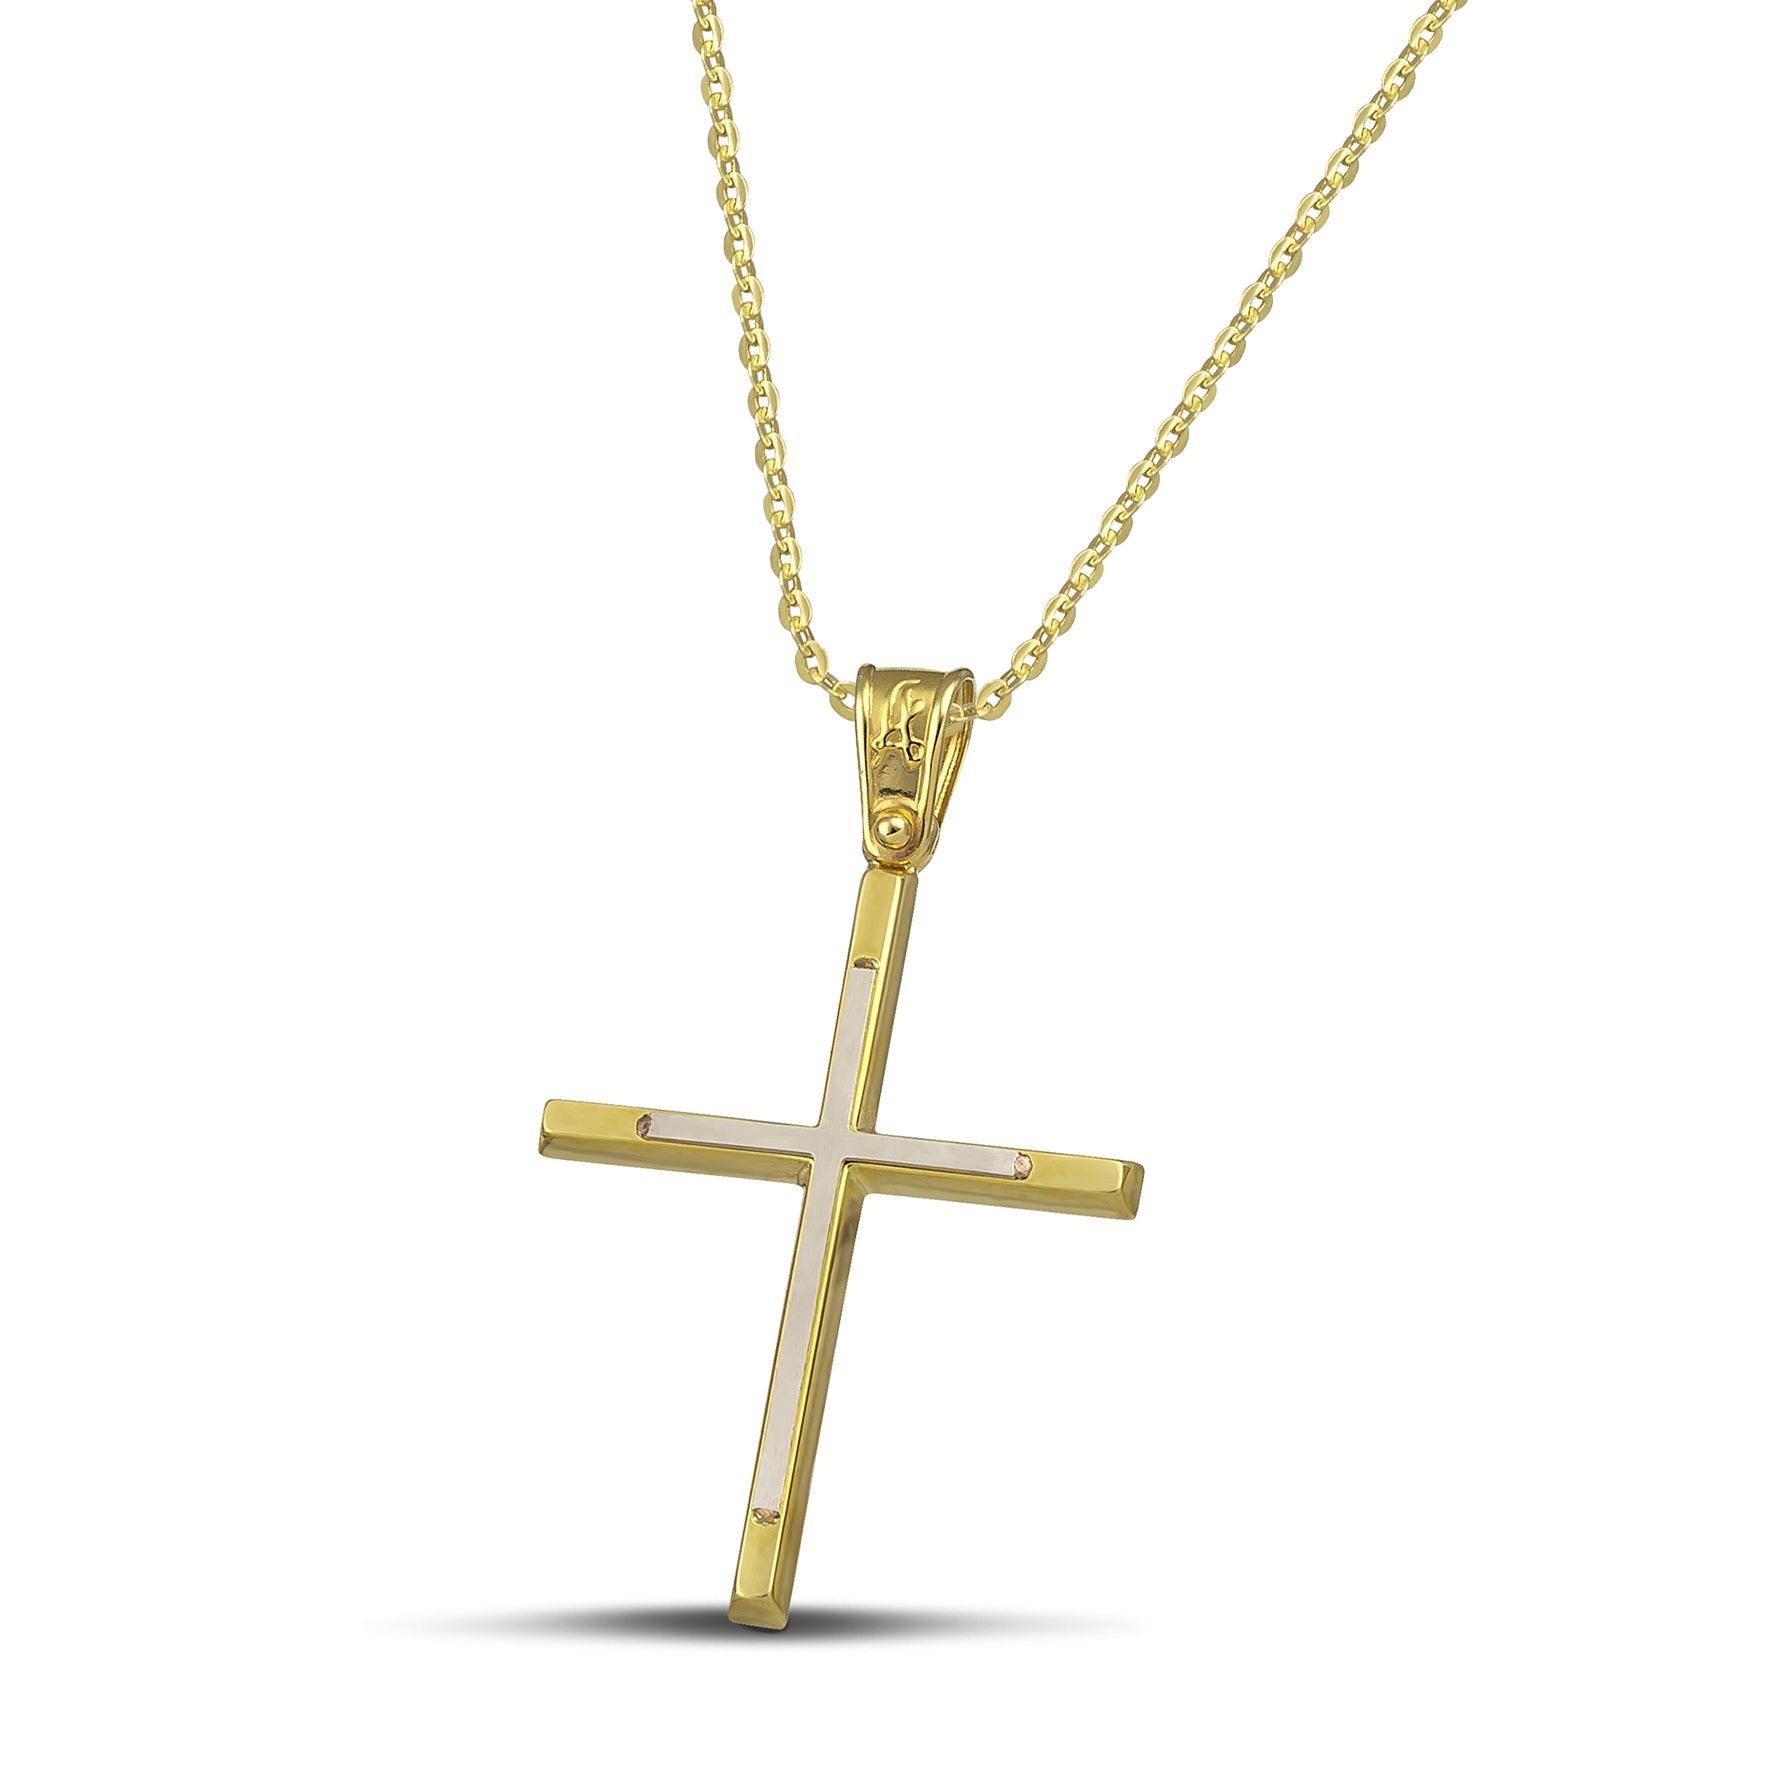 Γυναικείος σταυρός από χρυσό 14 καρατίων και λευκόχρυσο, με λεπτή αλυσίδα.